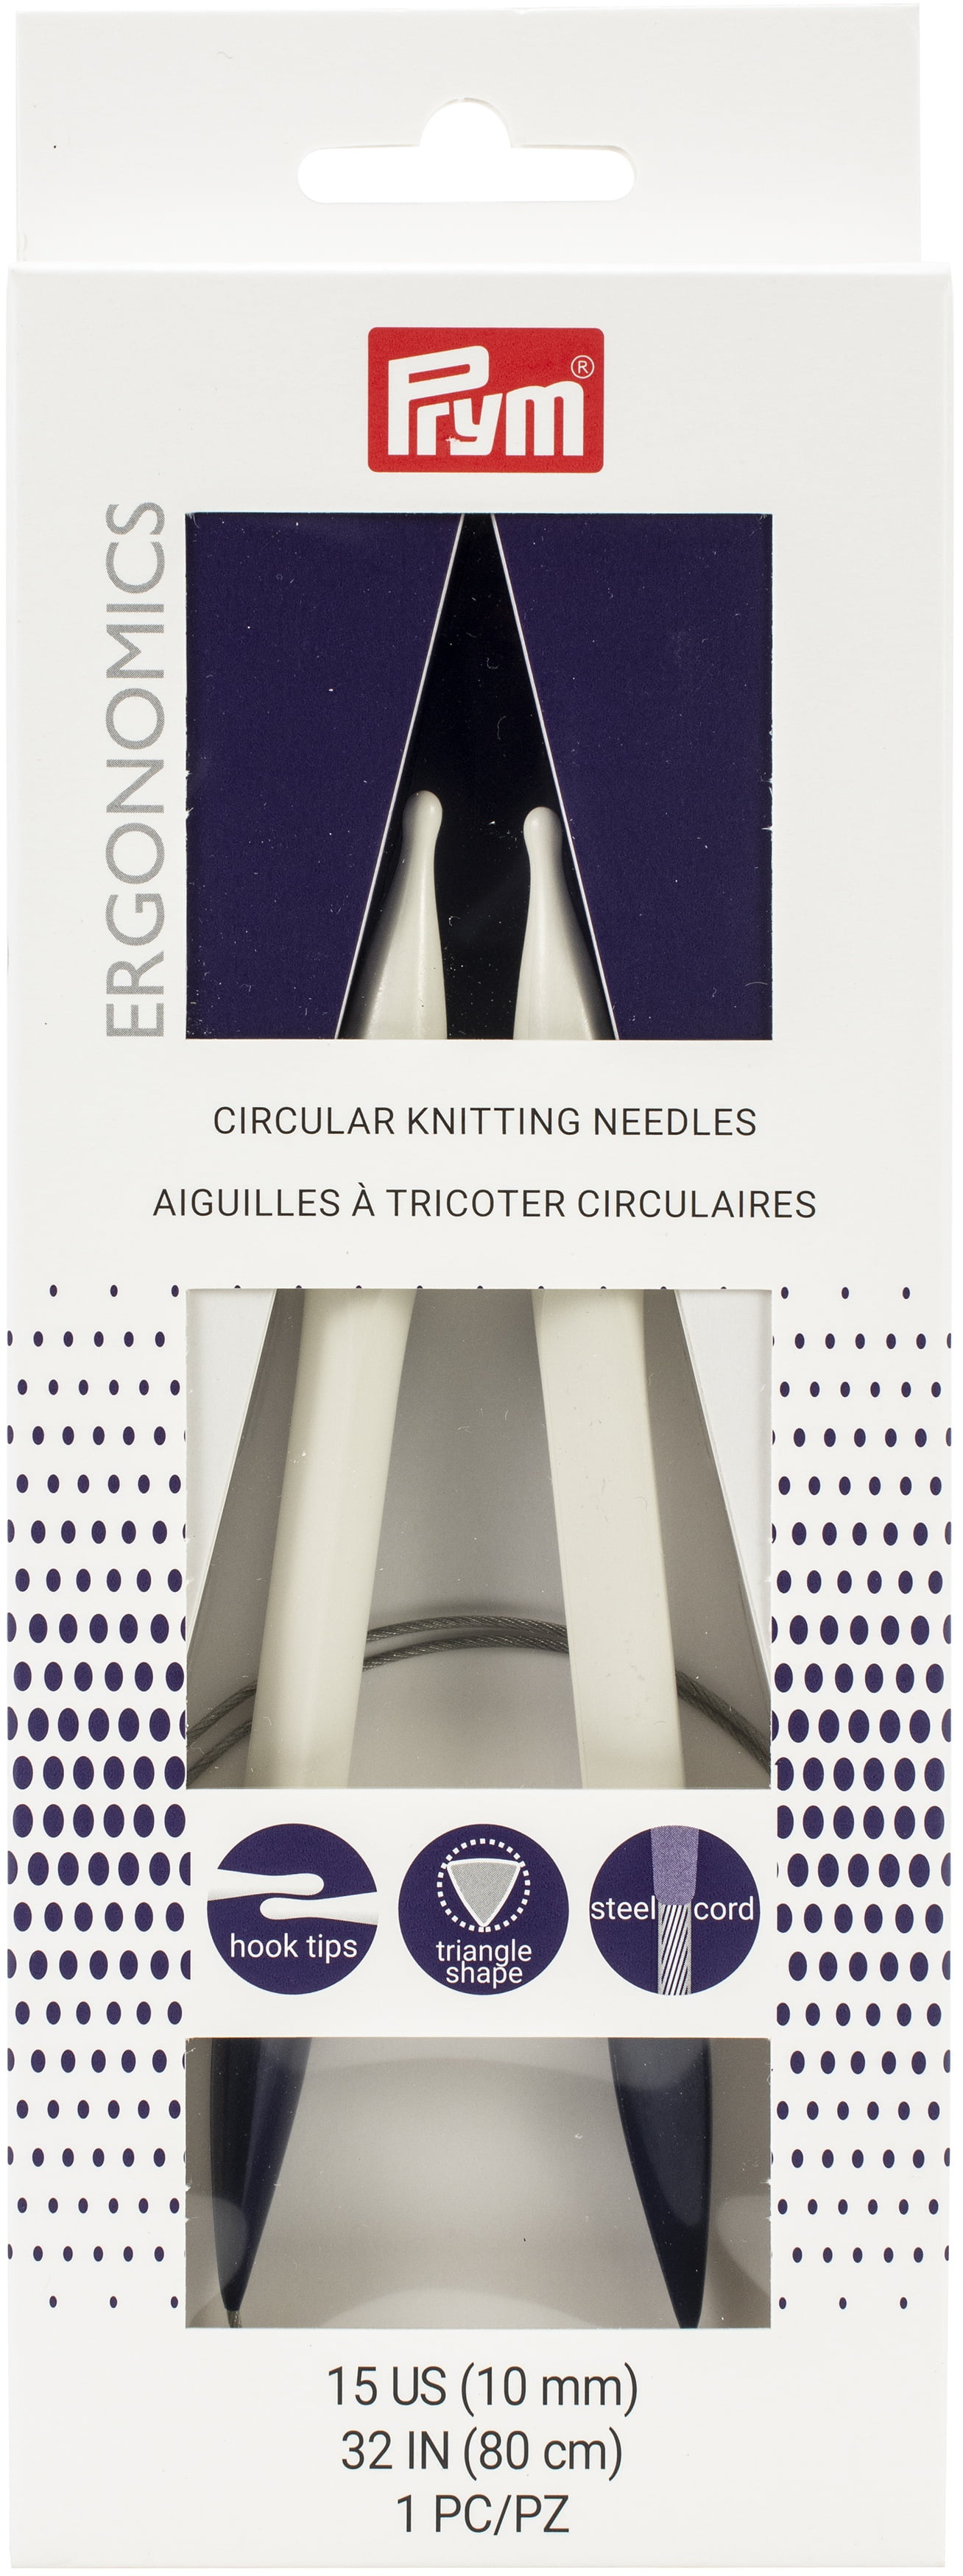 Prym Circular Knitting Needle Folder Kyoto, Multicoloured, One Size